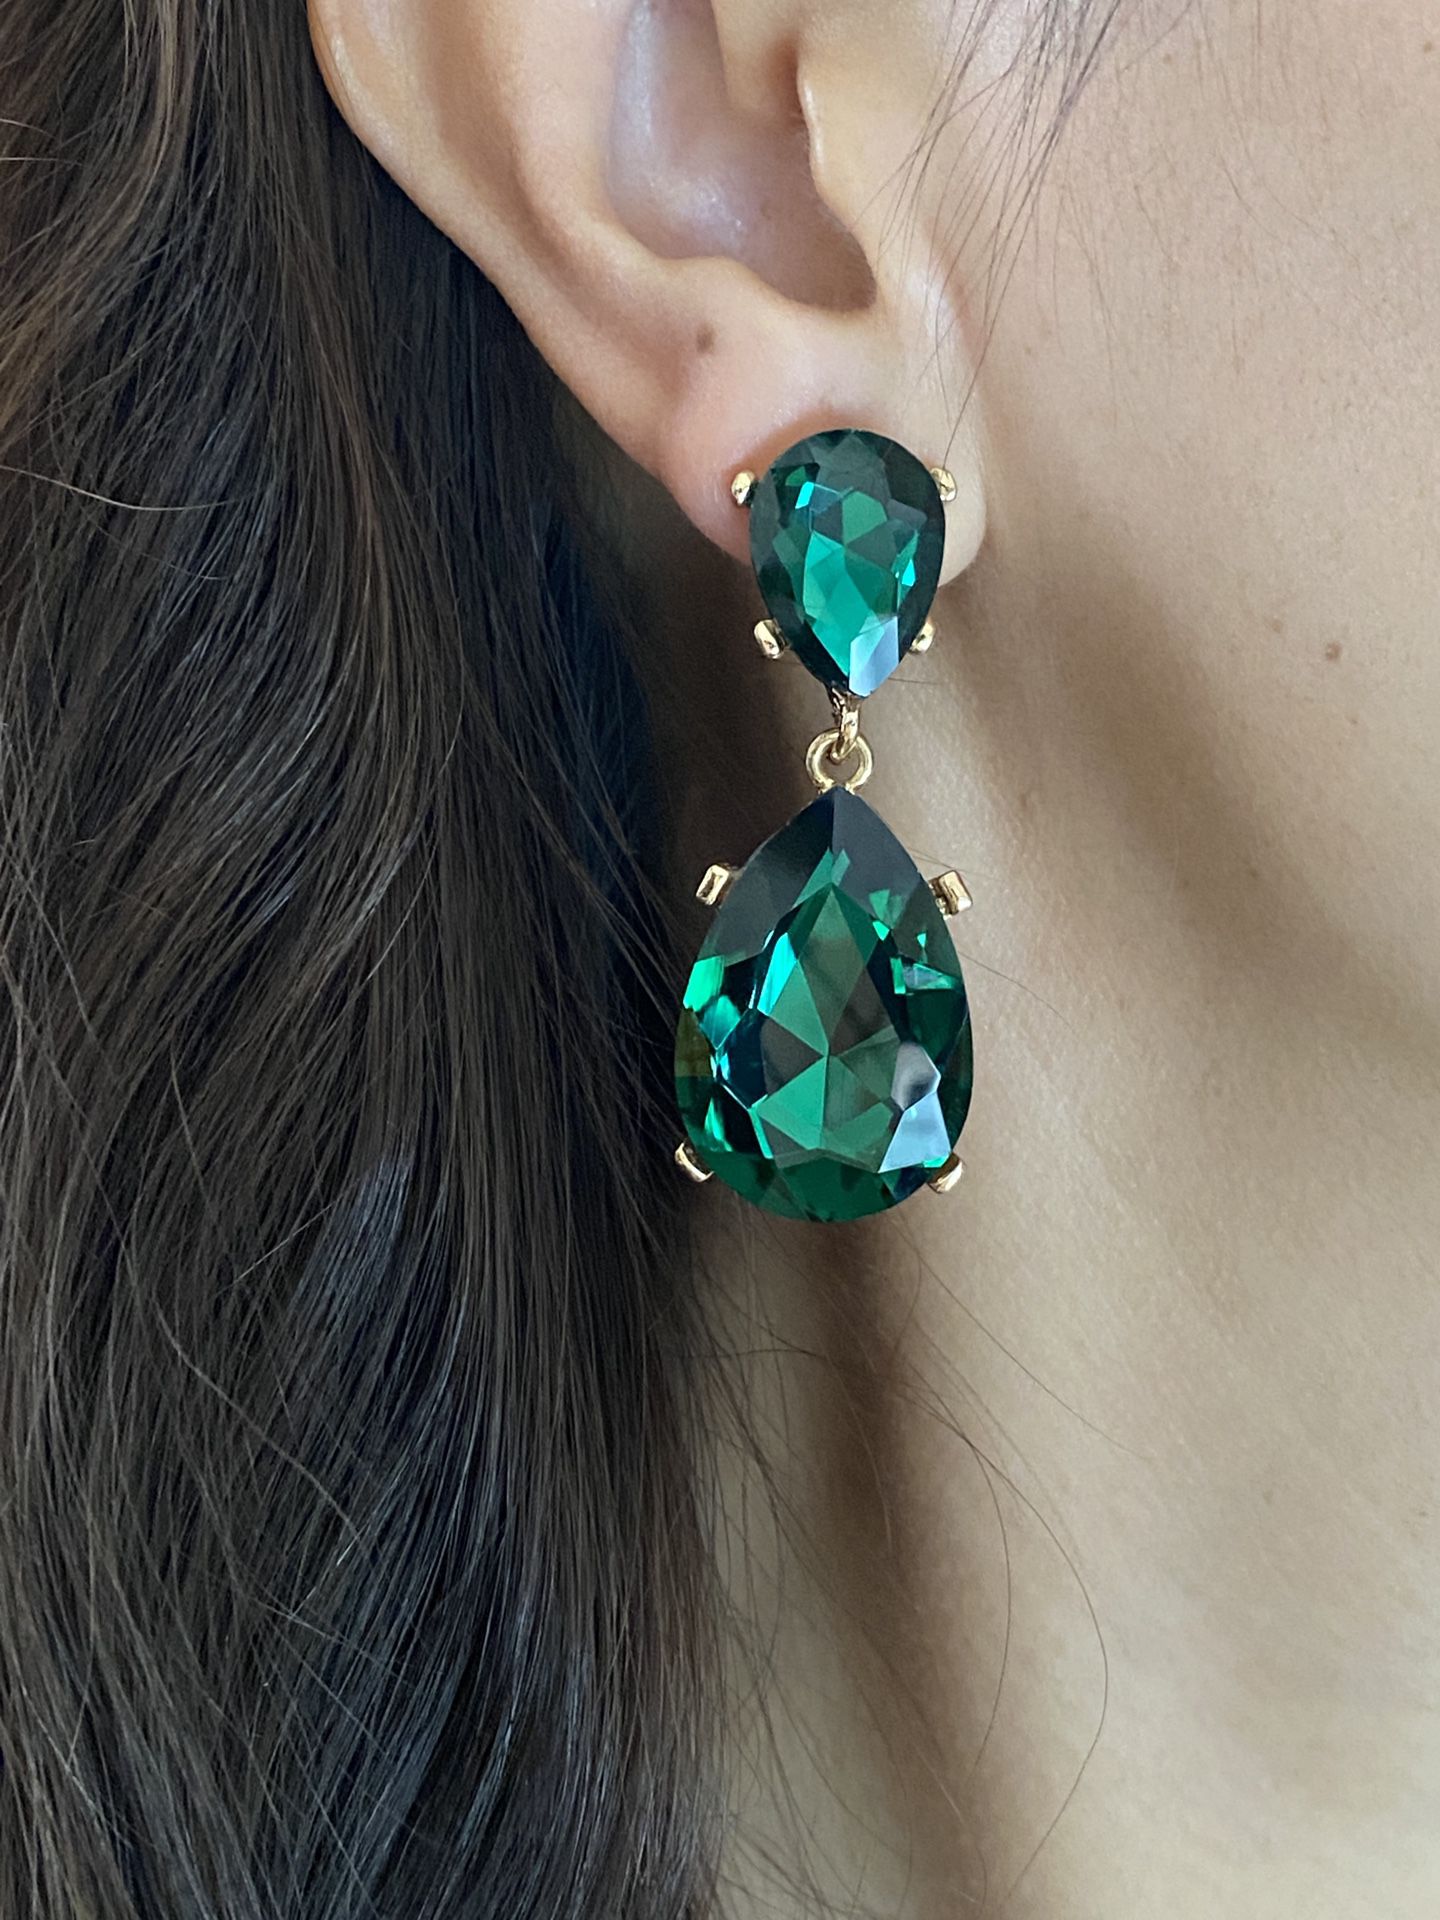 Green Teardrop Earrings,Emerald Crystal Earrings,Bridal Earrings,Wedding Earrings,Big Crystal Earrings,Bridesmaids Earrings,Party Earrings,Gift for he